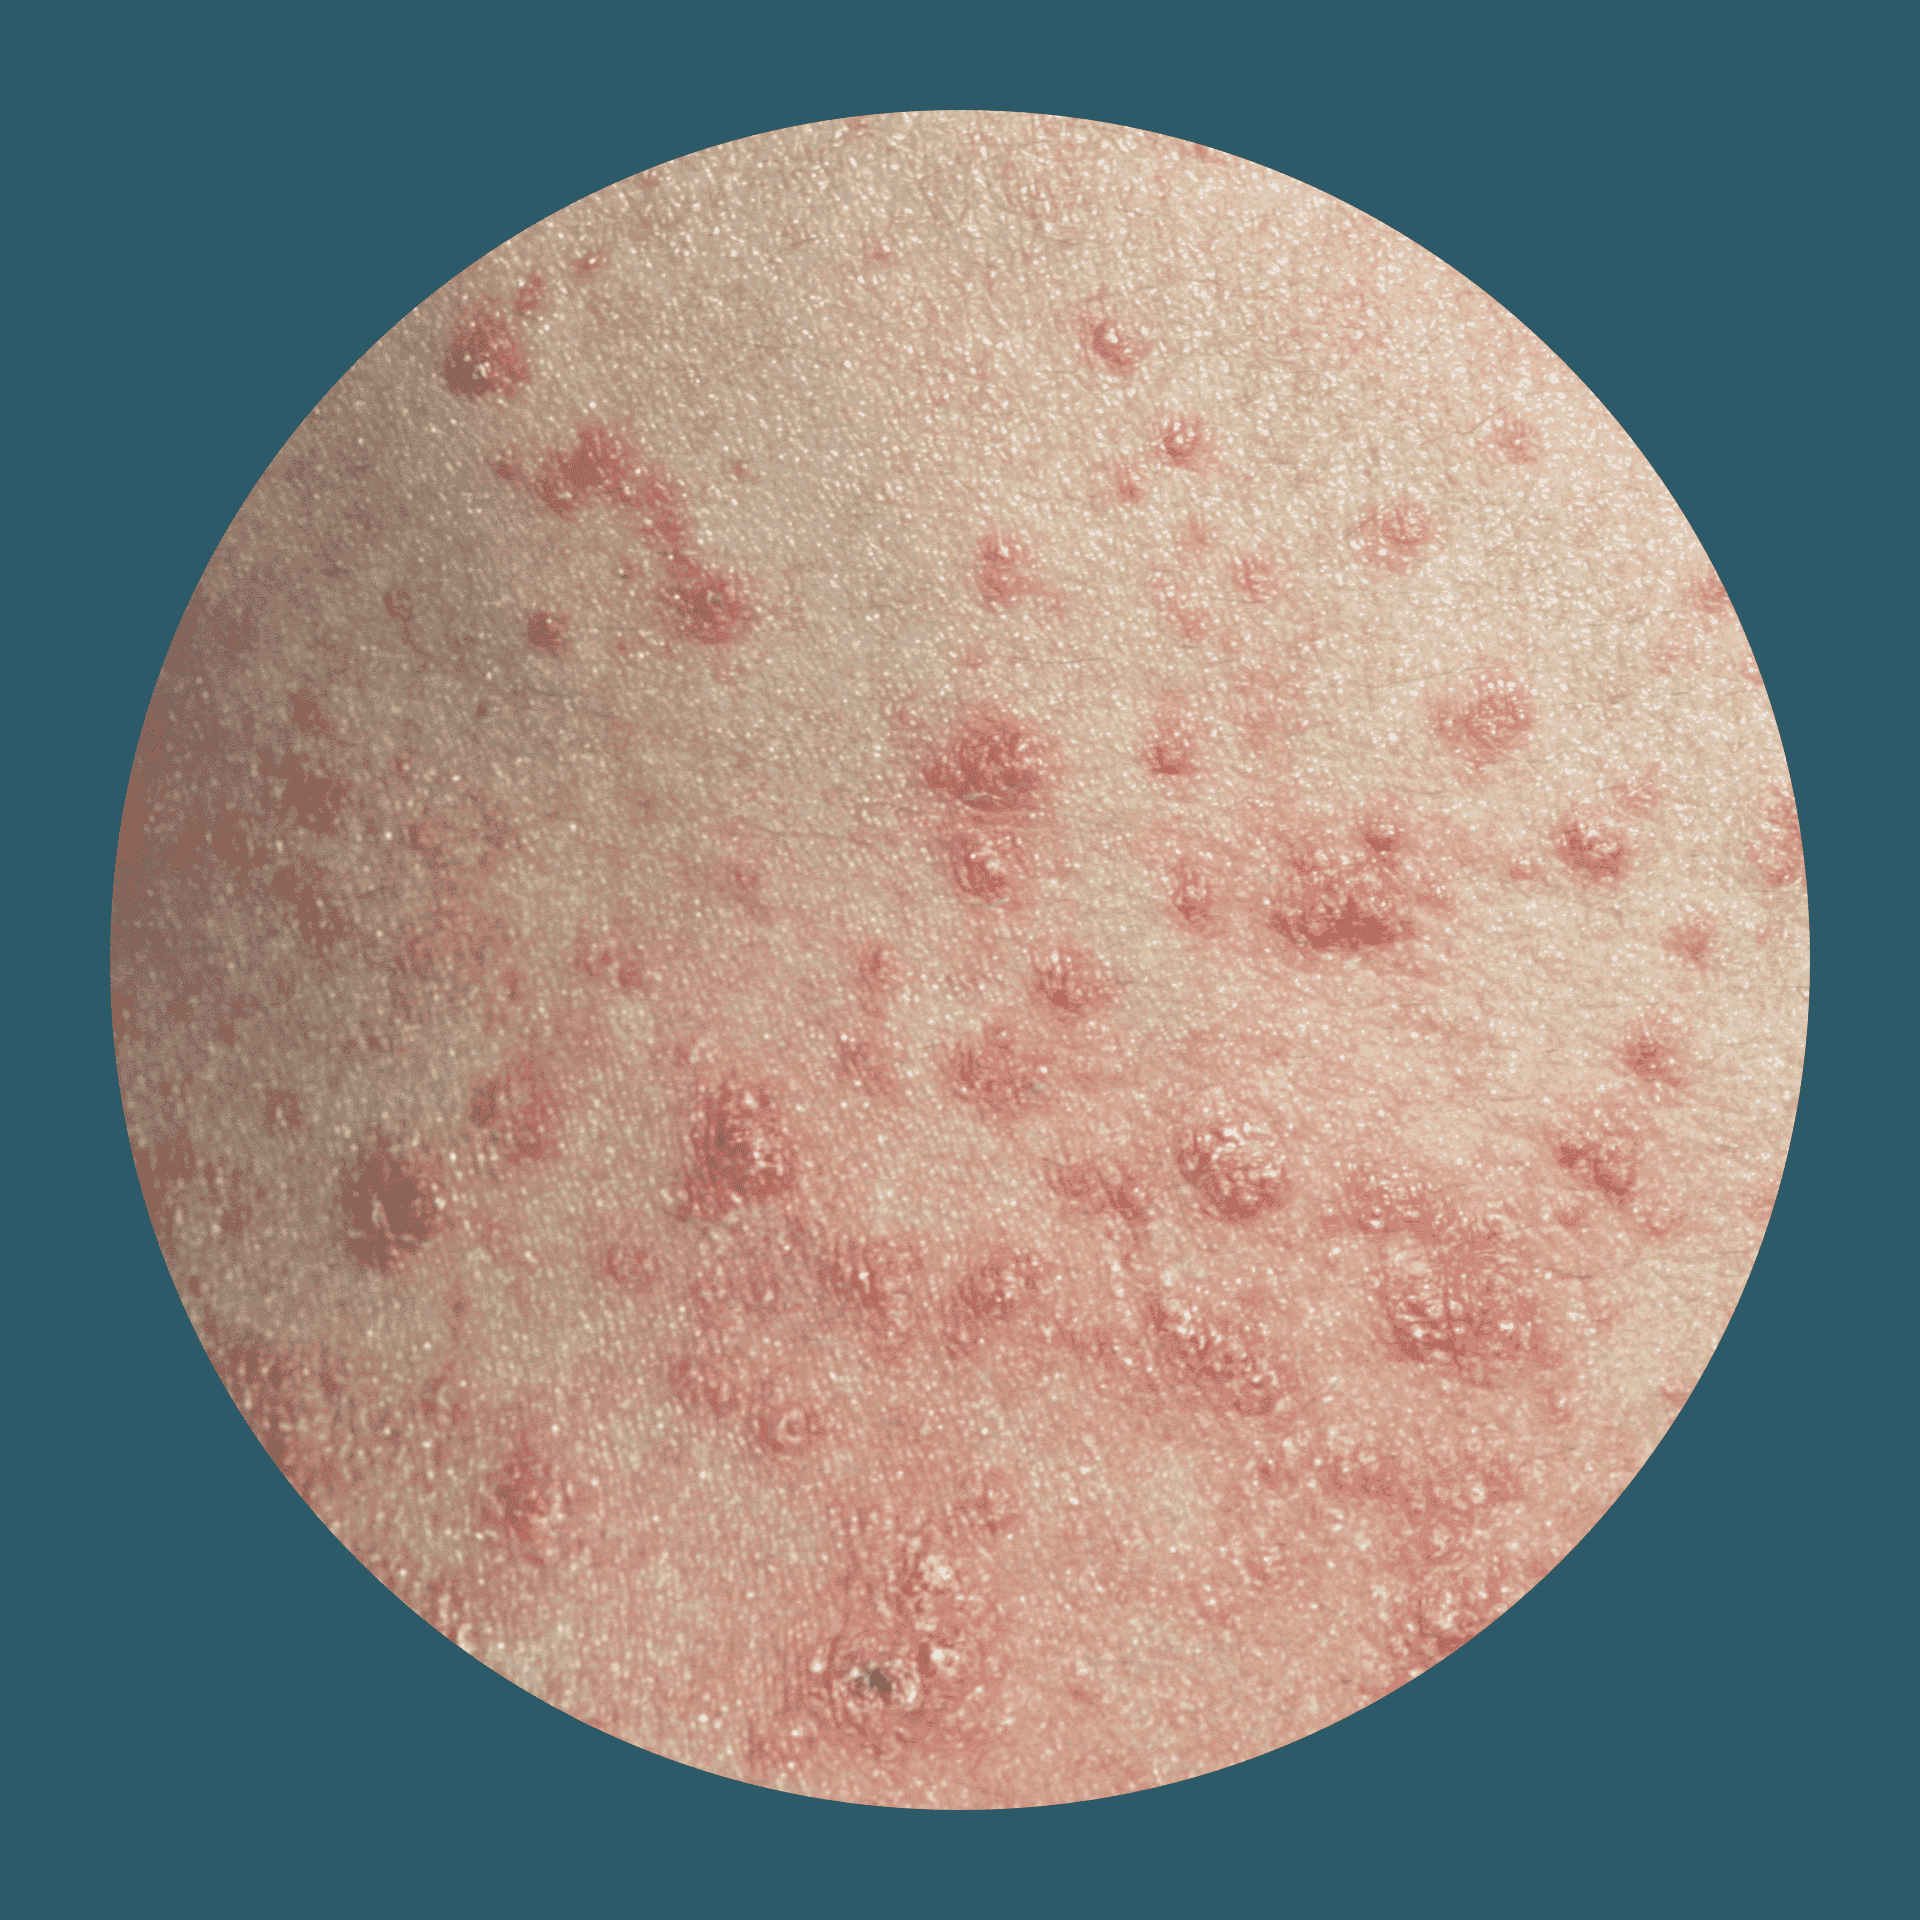 Tröpfchenförmige rote Plaques auf der Haut bei Psoriasis guttata